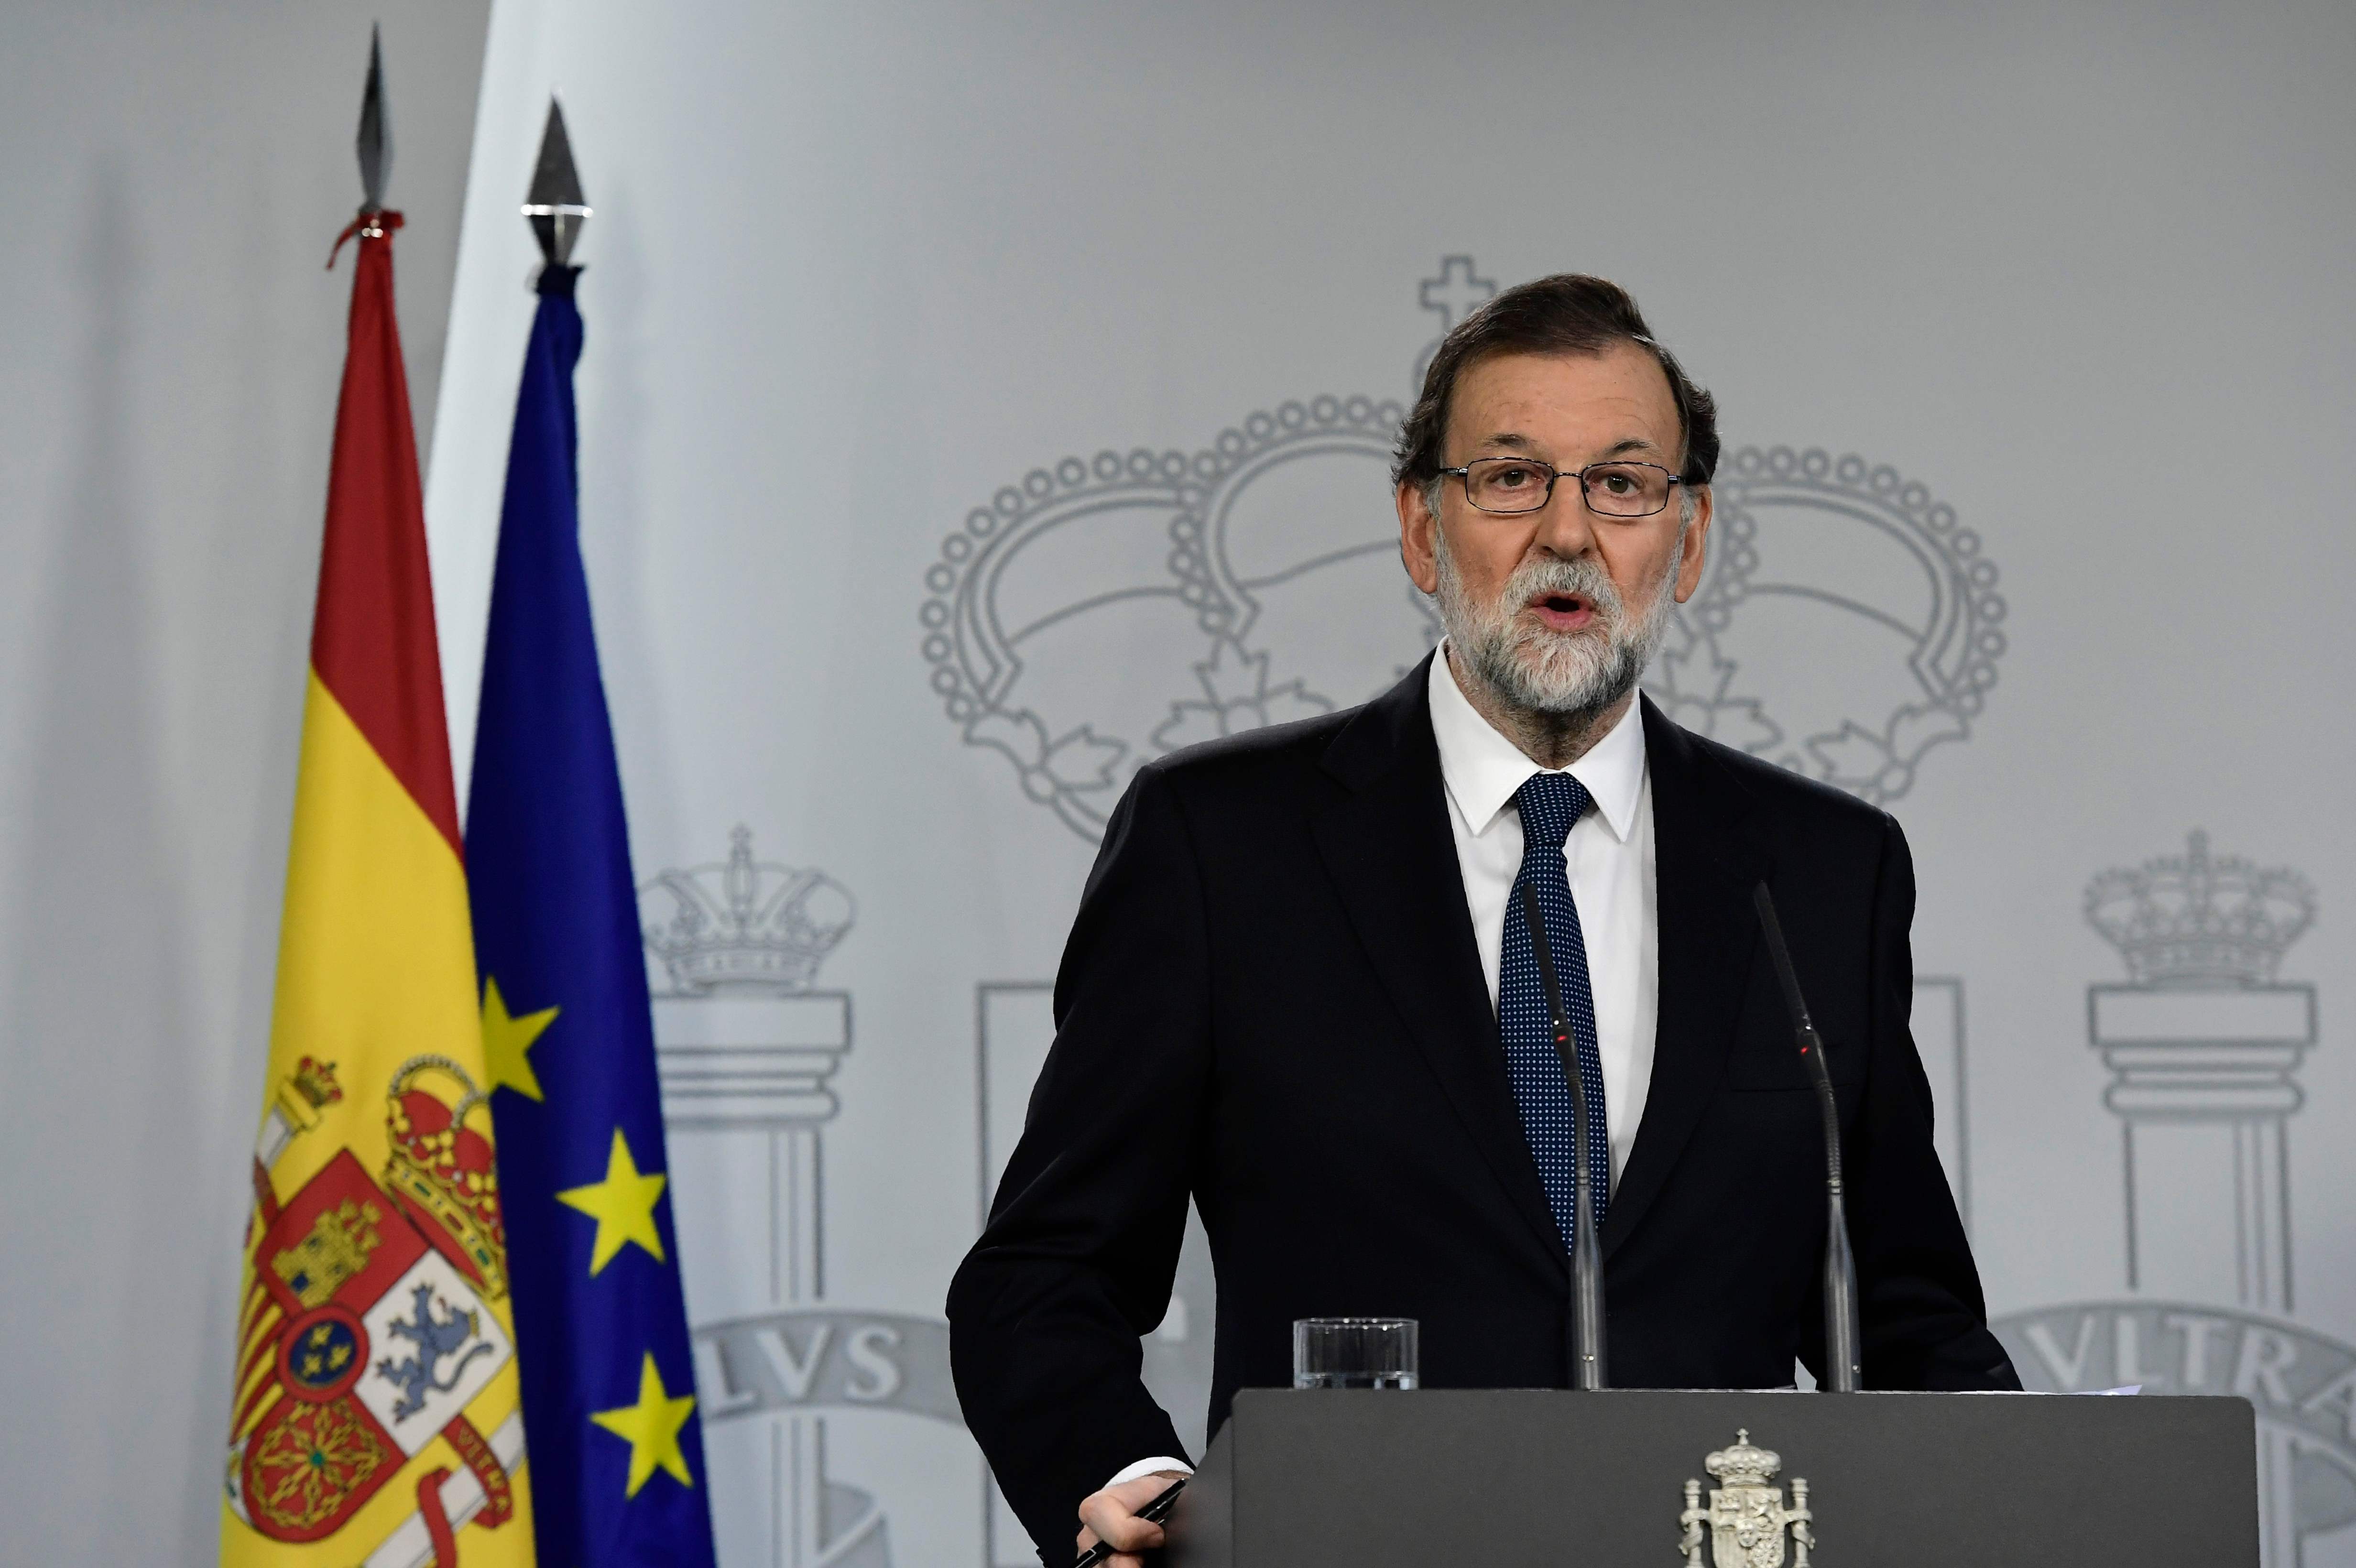 Estado de derecho a salvo luego de impedir consulta en Cataluña: Rajoy